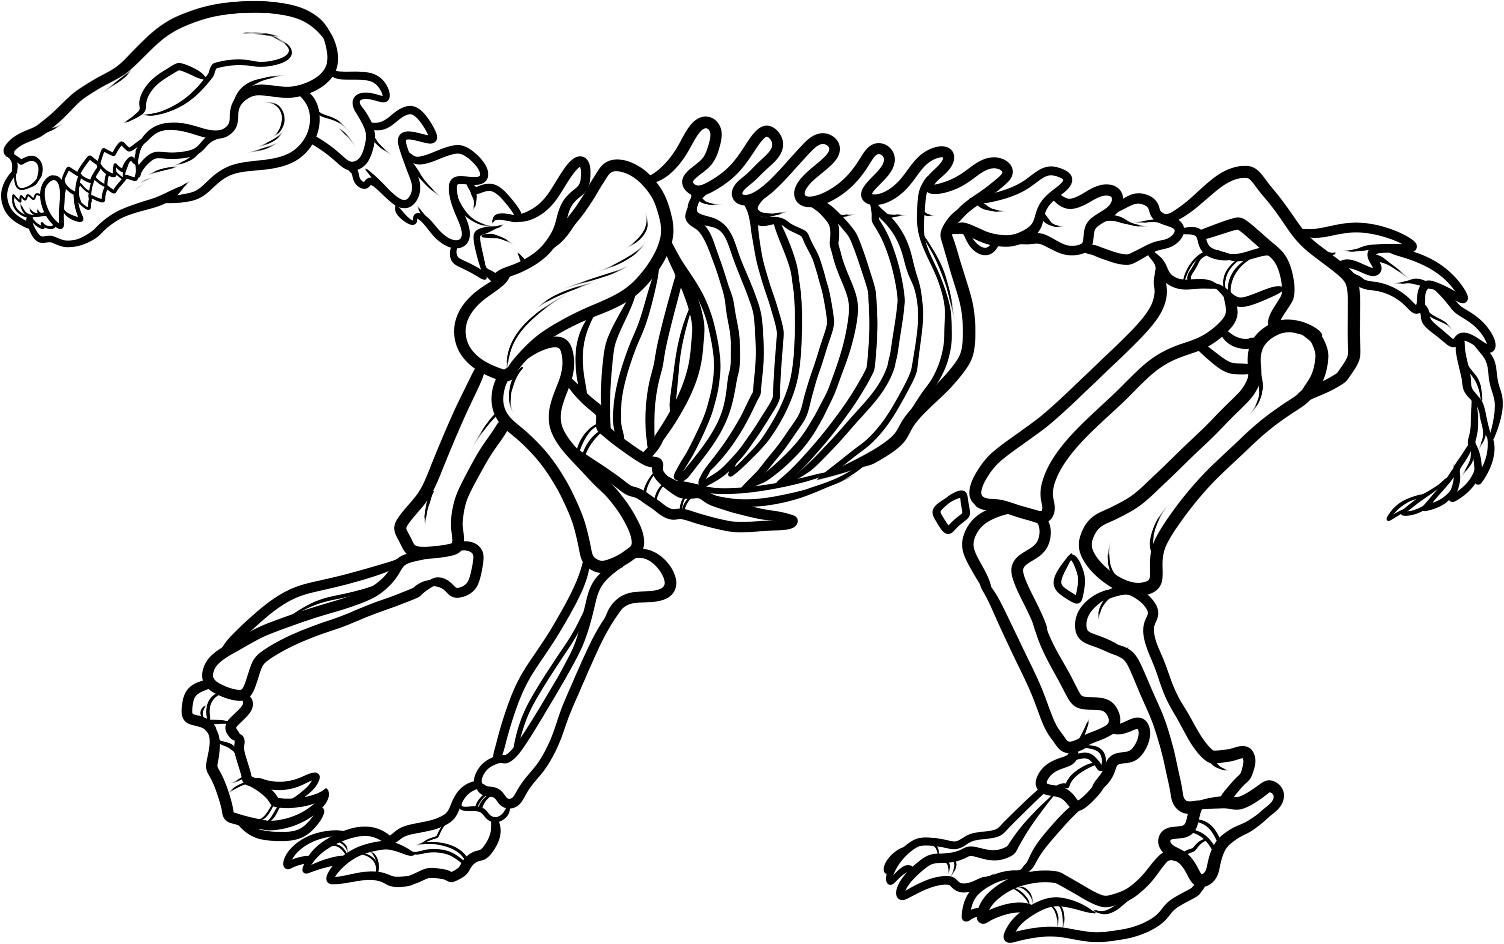 Dinosaur Skeleton Coloring Page Kids Printable Coloring Sheet ...